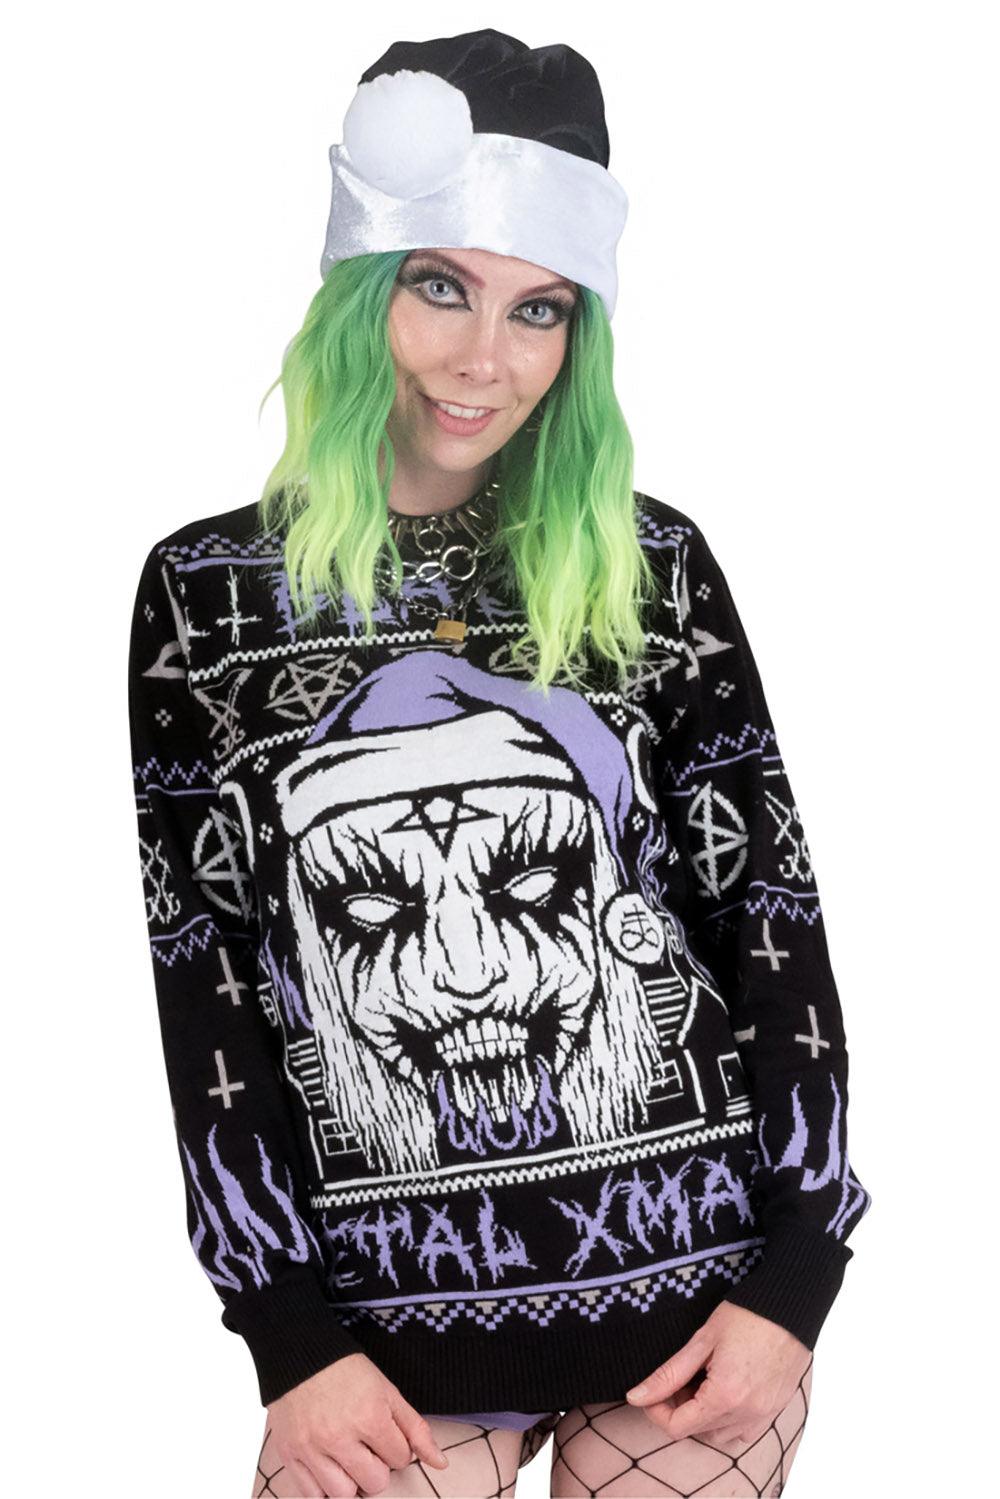 Too Fast Black Metal Meme Christmas Sweater - VampireFreaks